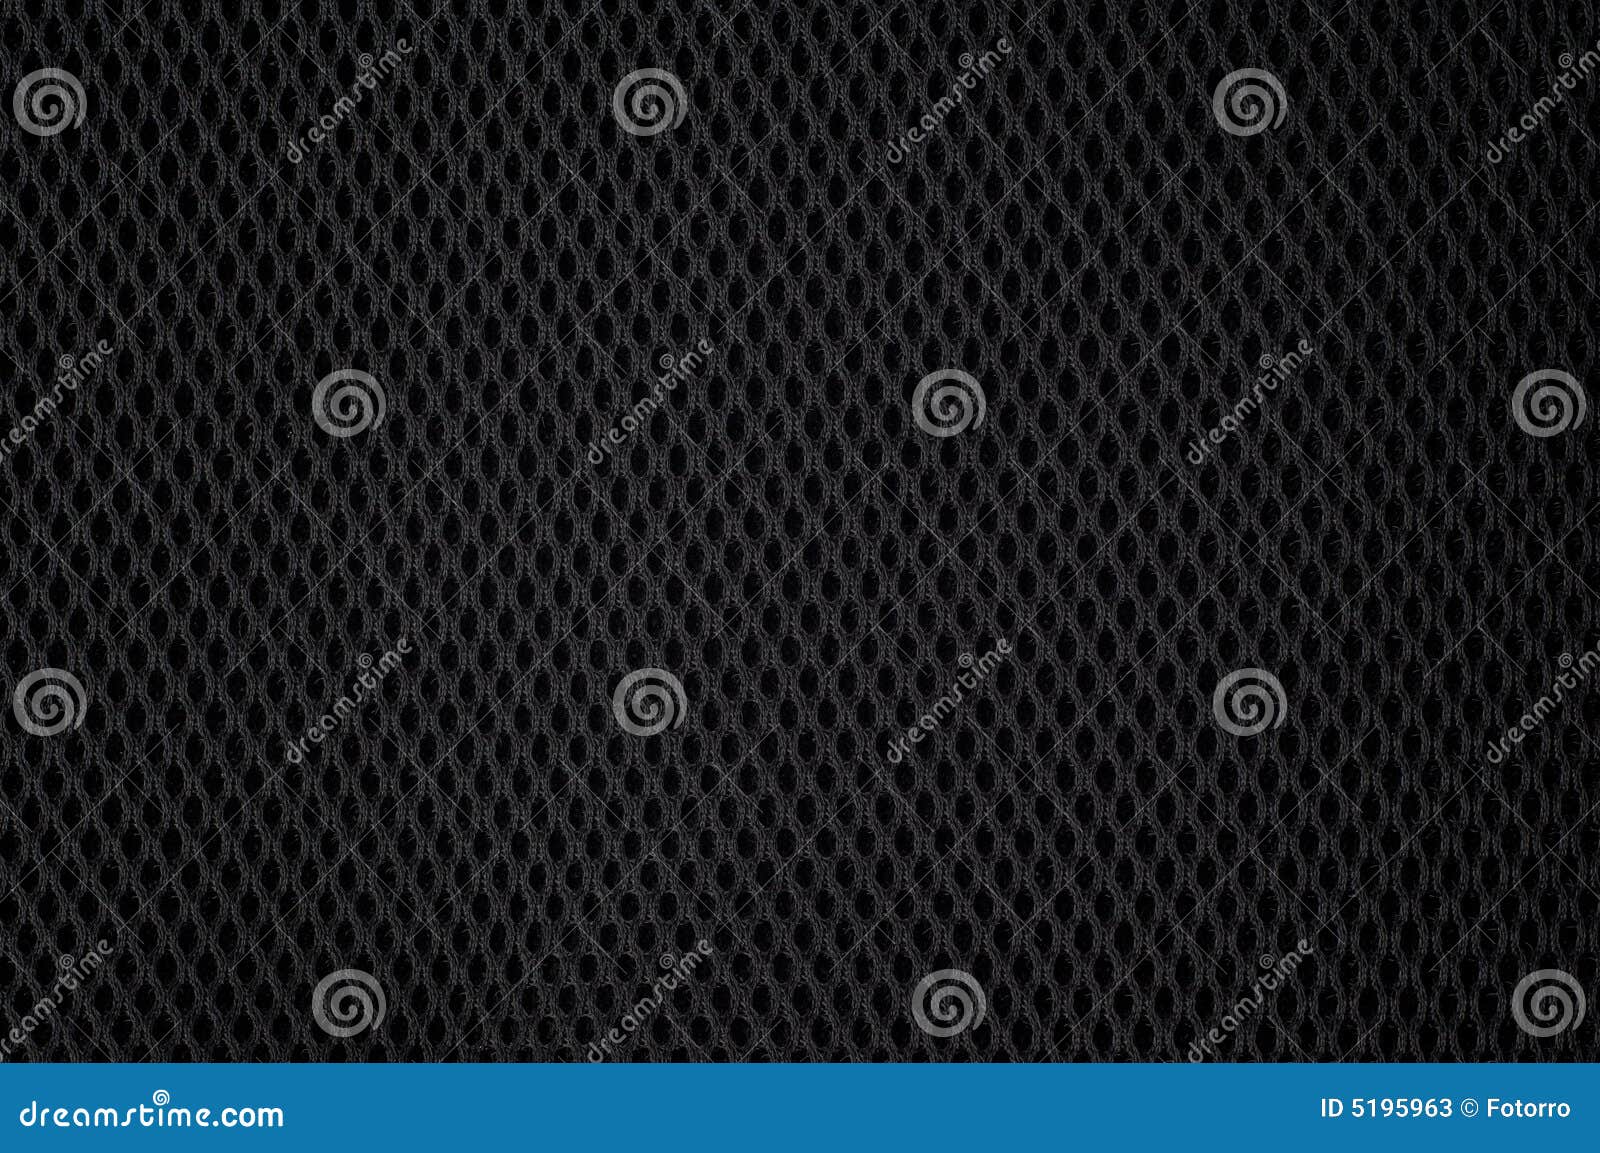 black nylon mesh texture